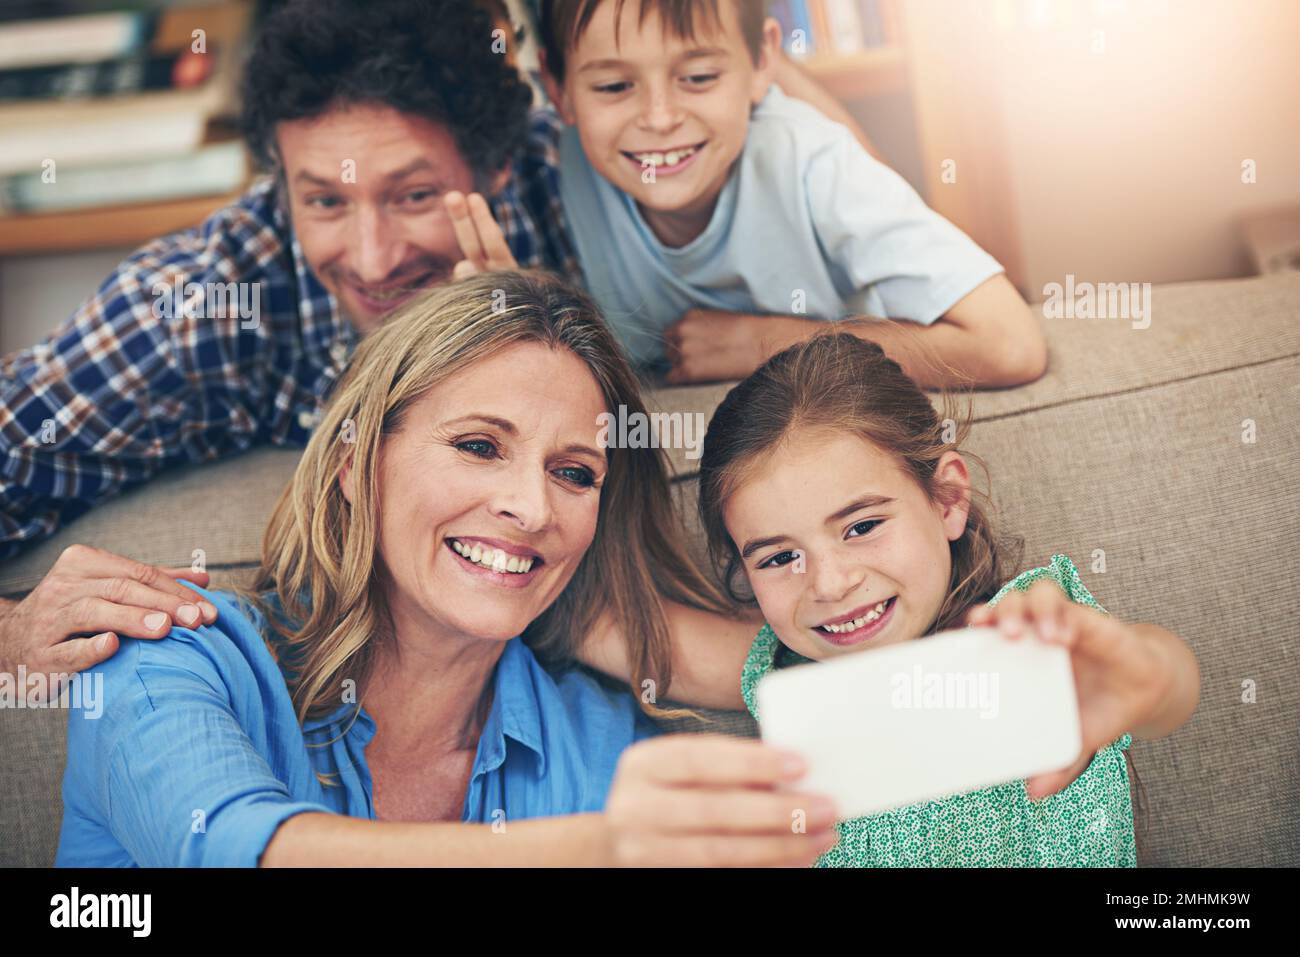 Familienzeit ist Selfie-Zeit. Eine glückliche Familie, die zu Hause ein Selfie mit einem Mobiltelefon macht. Stockfoto